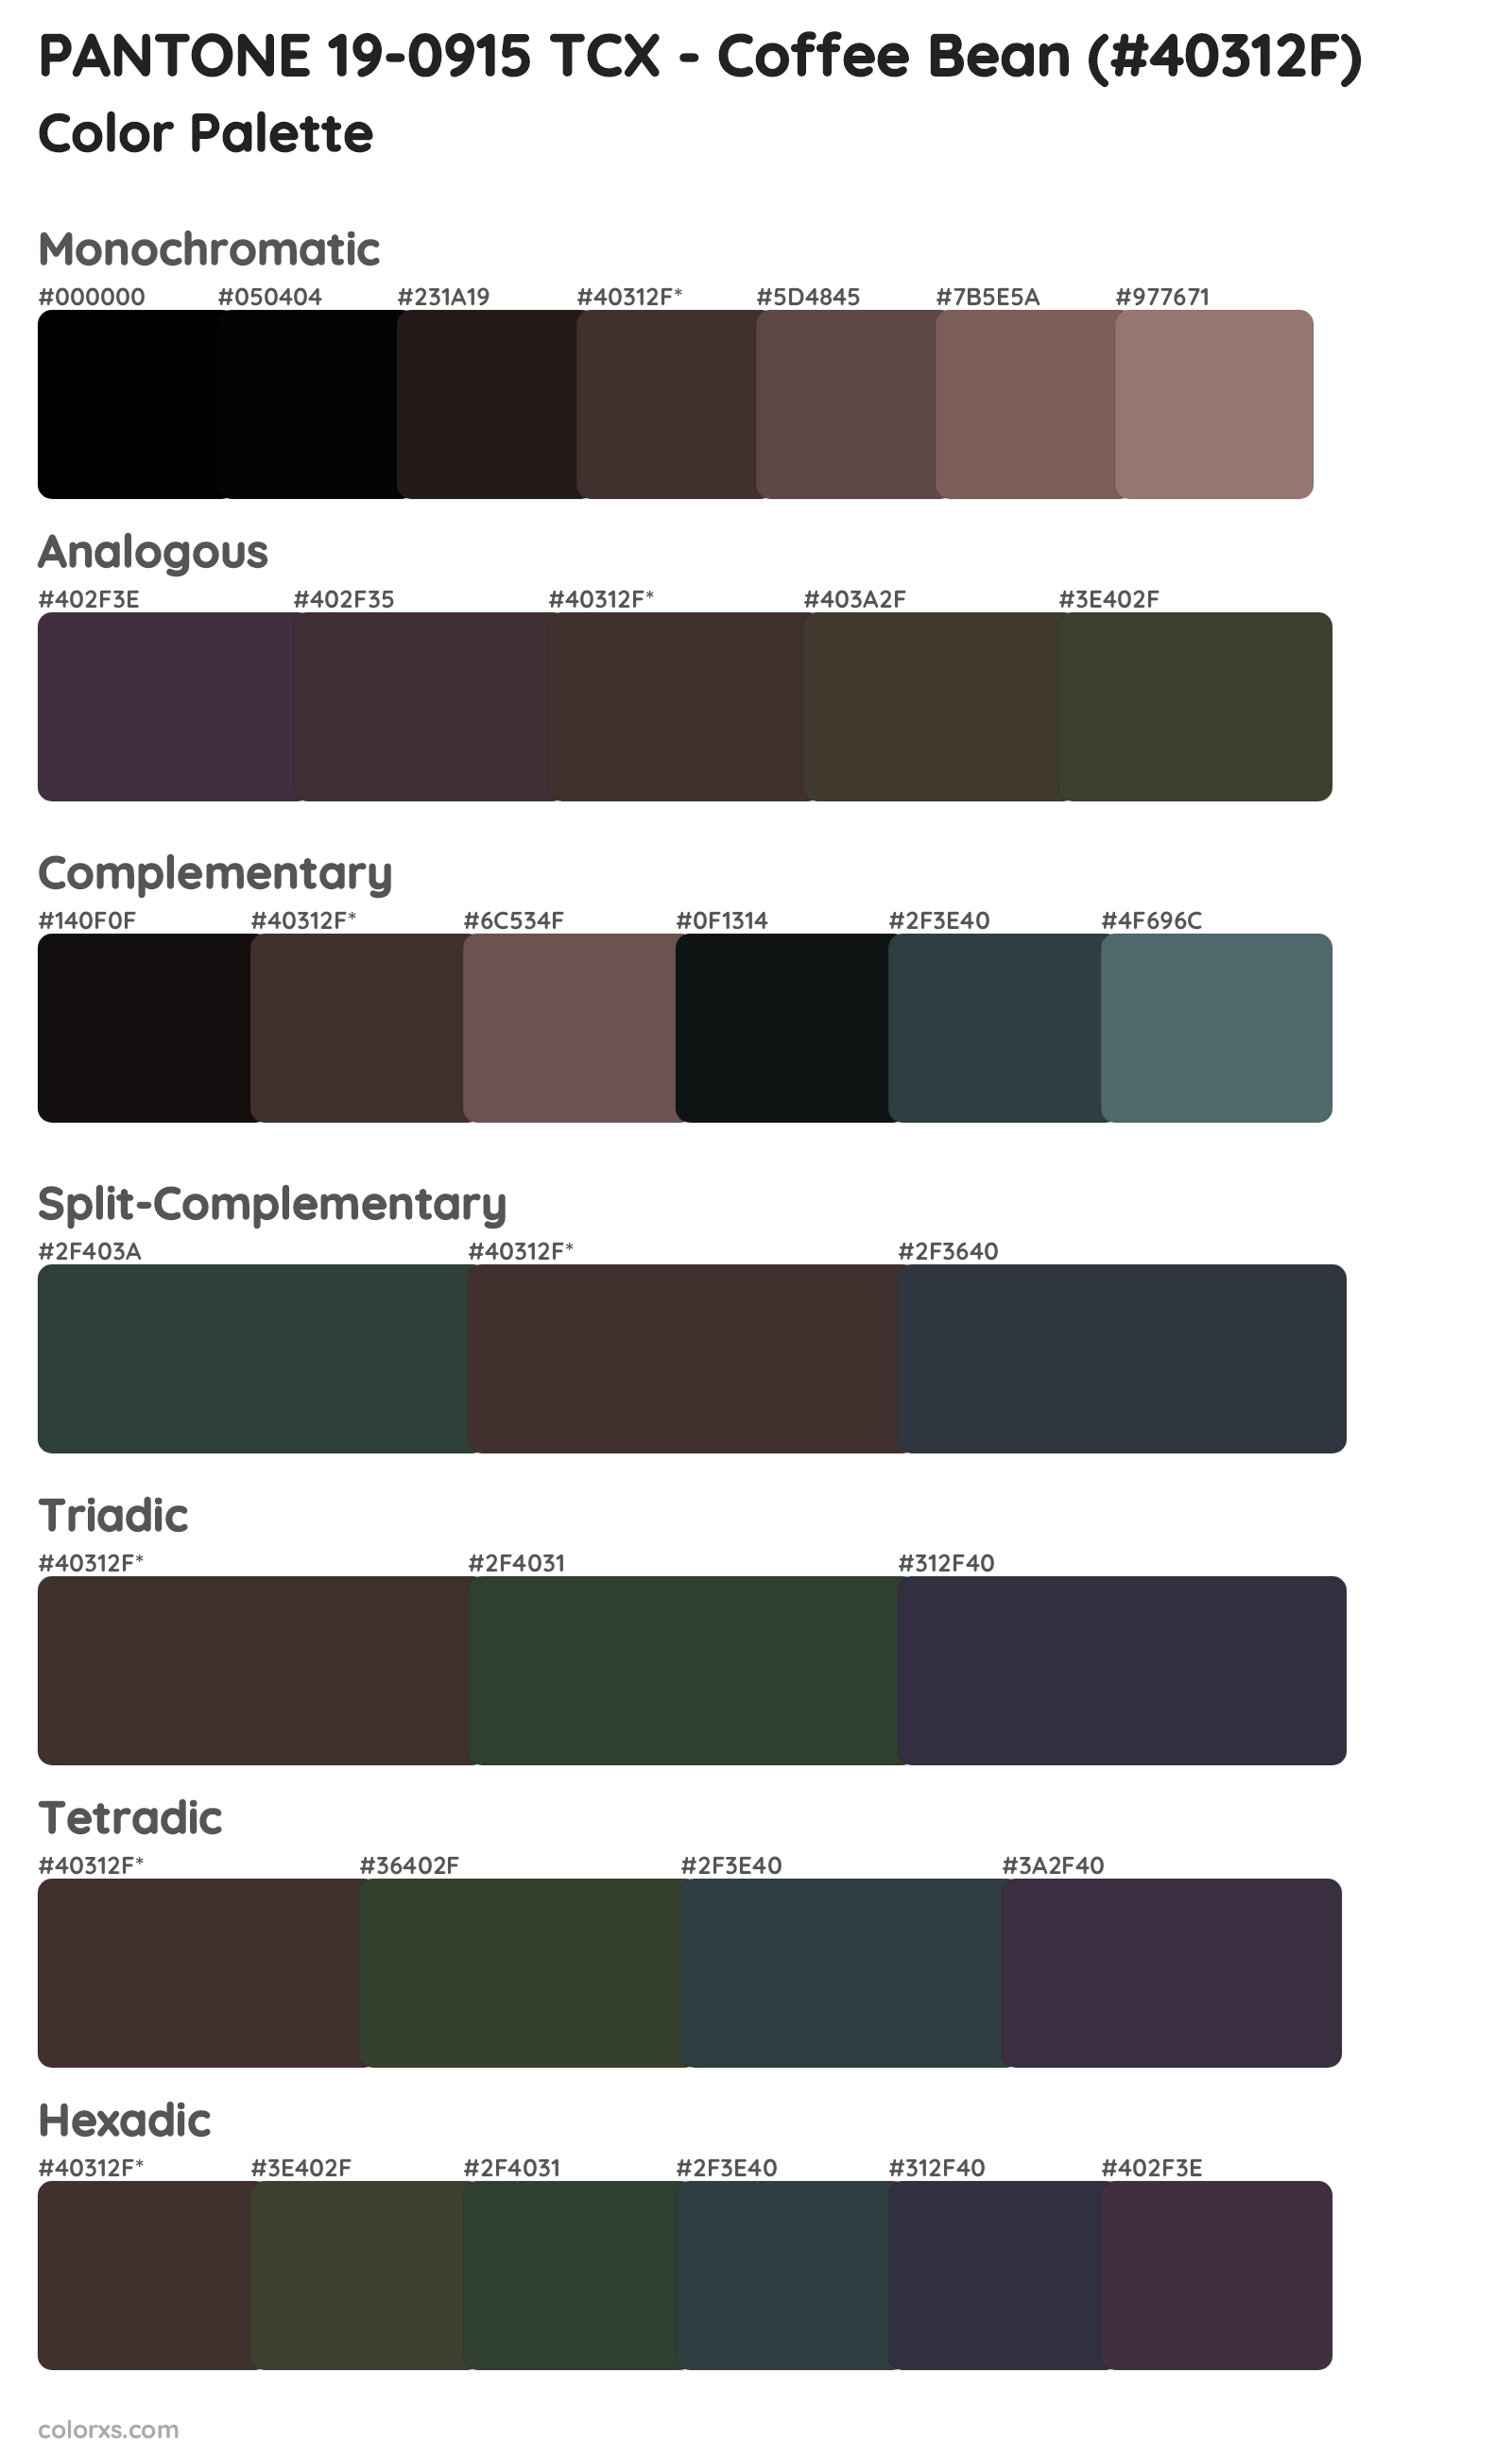 PANTONE 19-0915 TCX - Coffee Bean Color Scheme Palettes